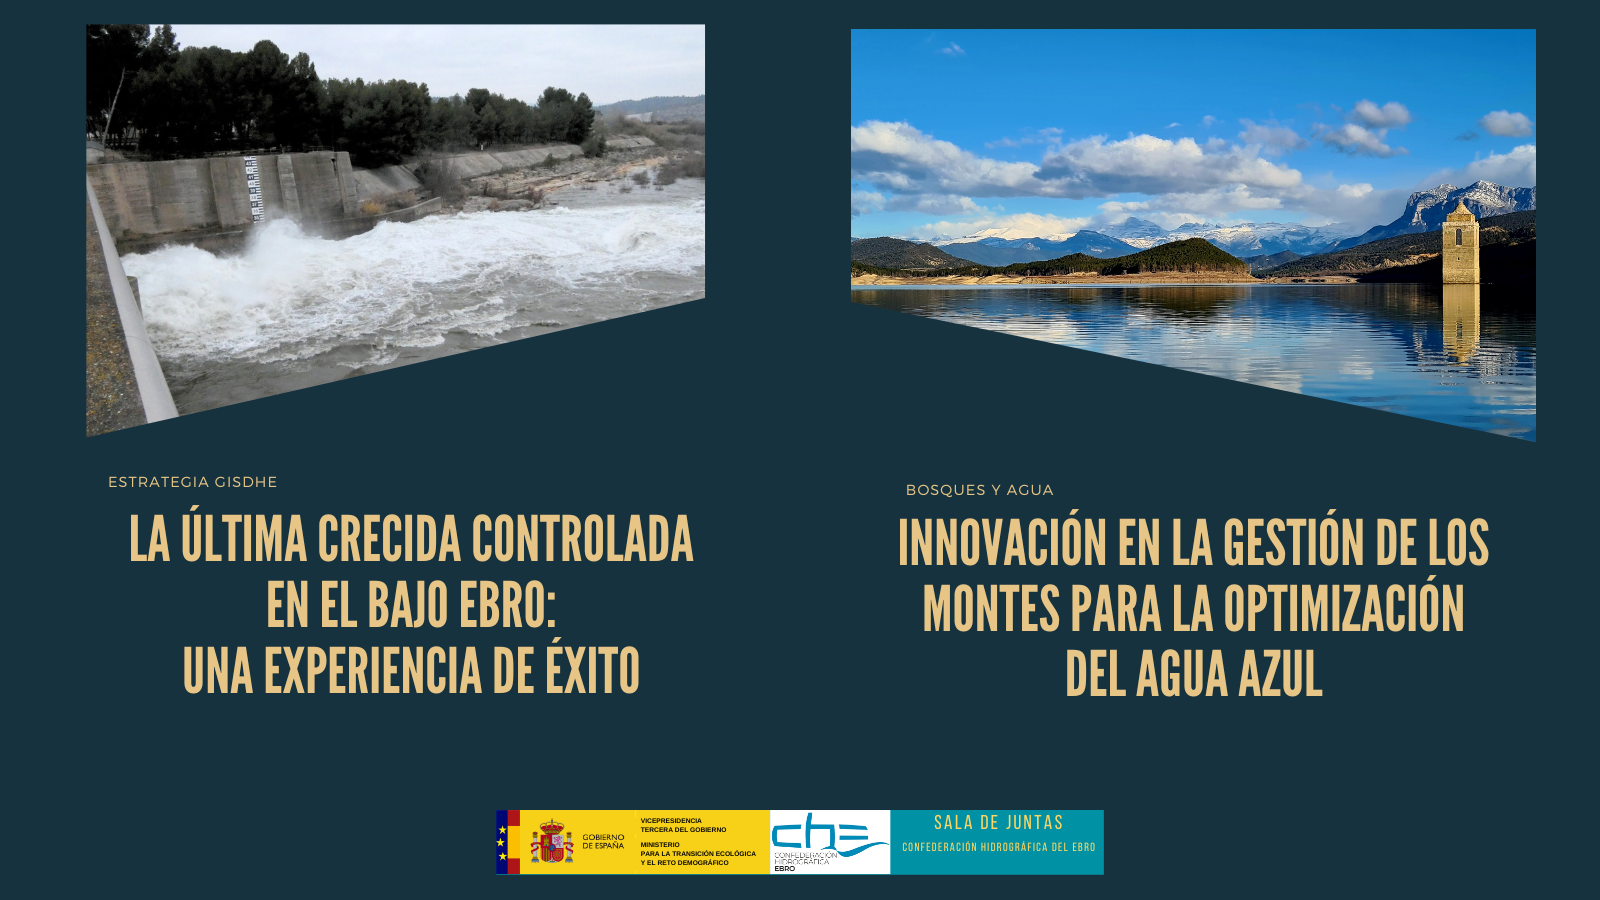 Imagen noticia - Próximas jornadas organizadas en la Confederación Hidrográfica del Ebro